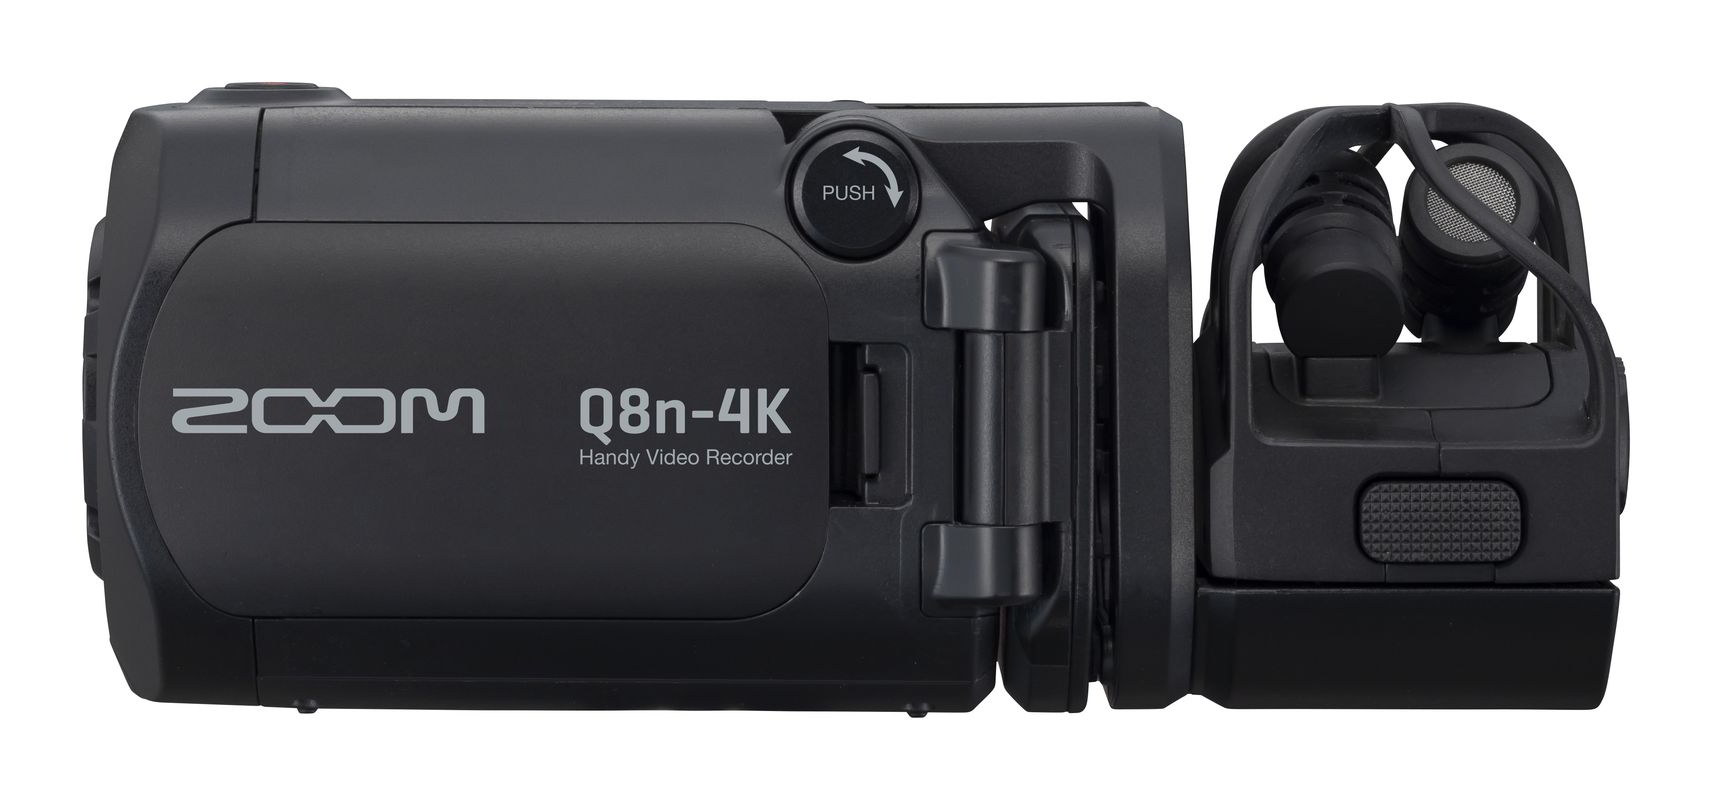 Q8n-4K背面画像